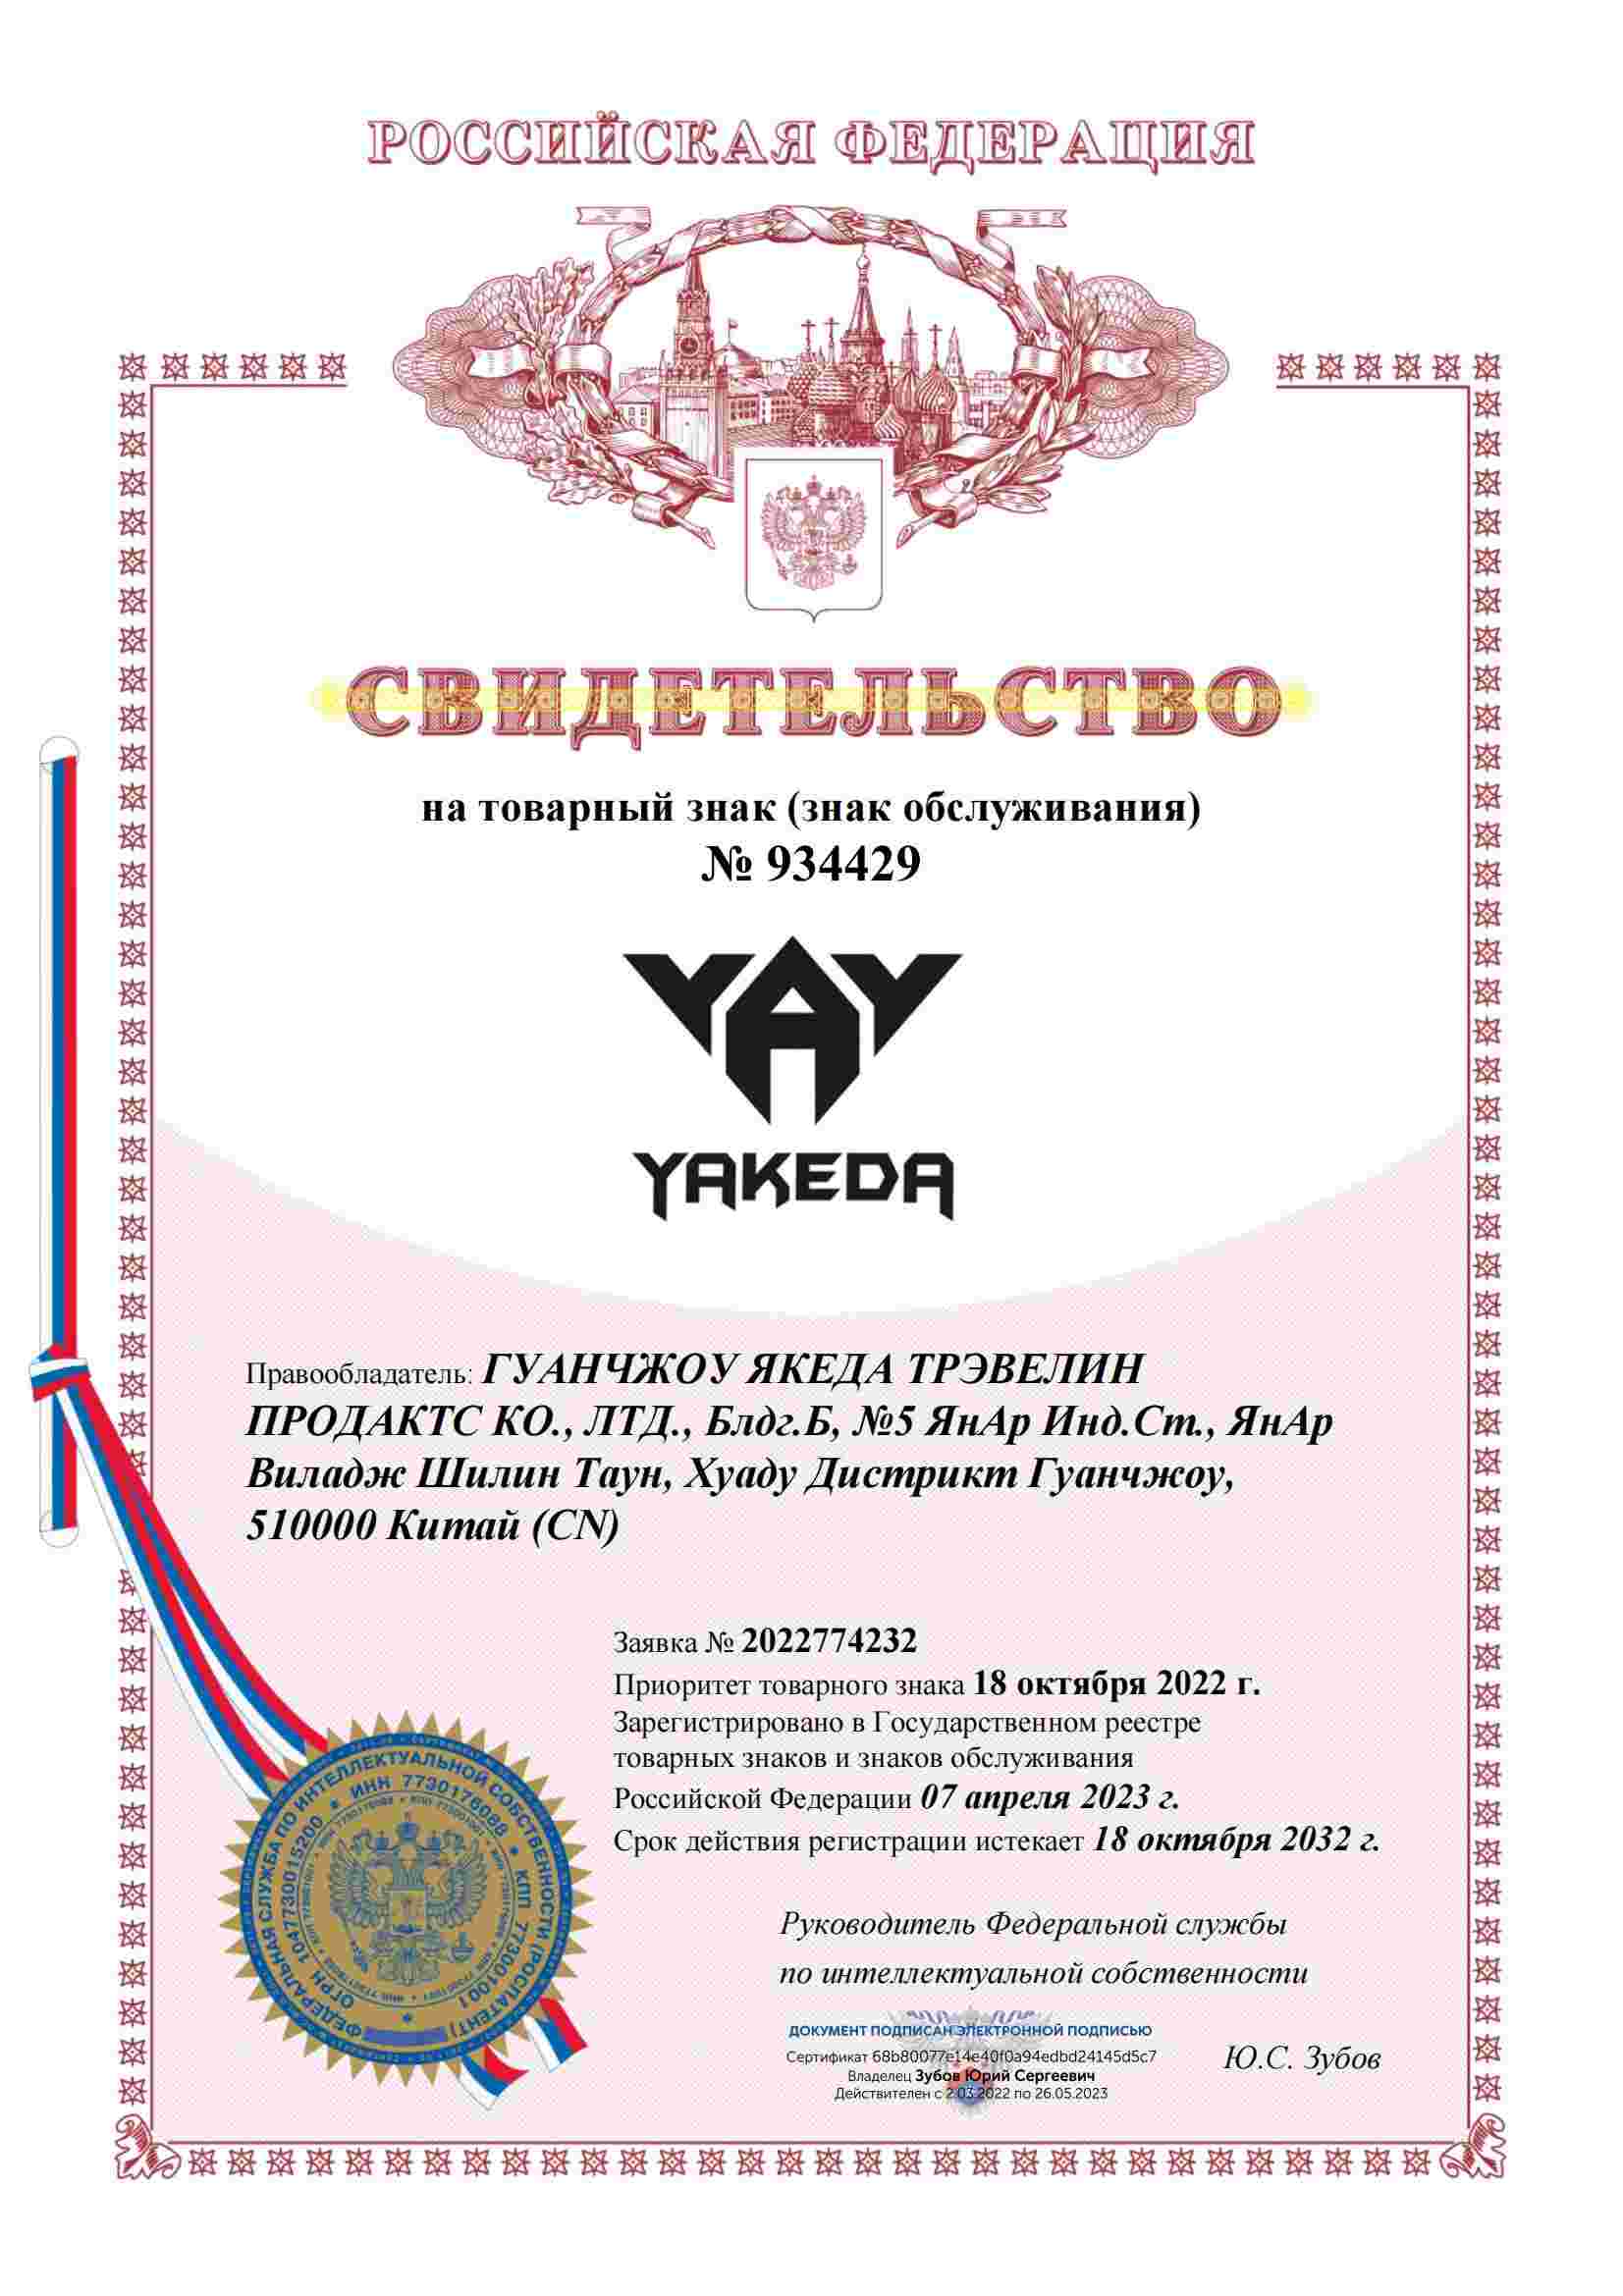 شهادة العلامة التجارية روسيا